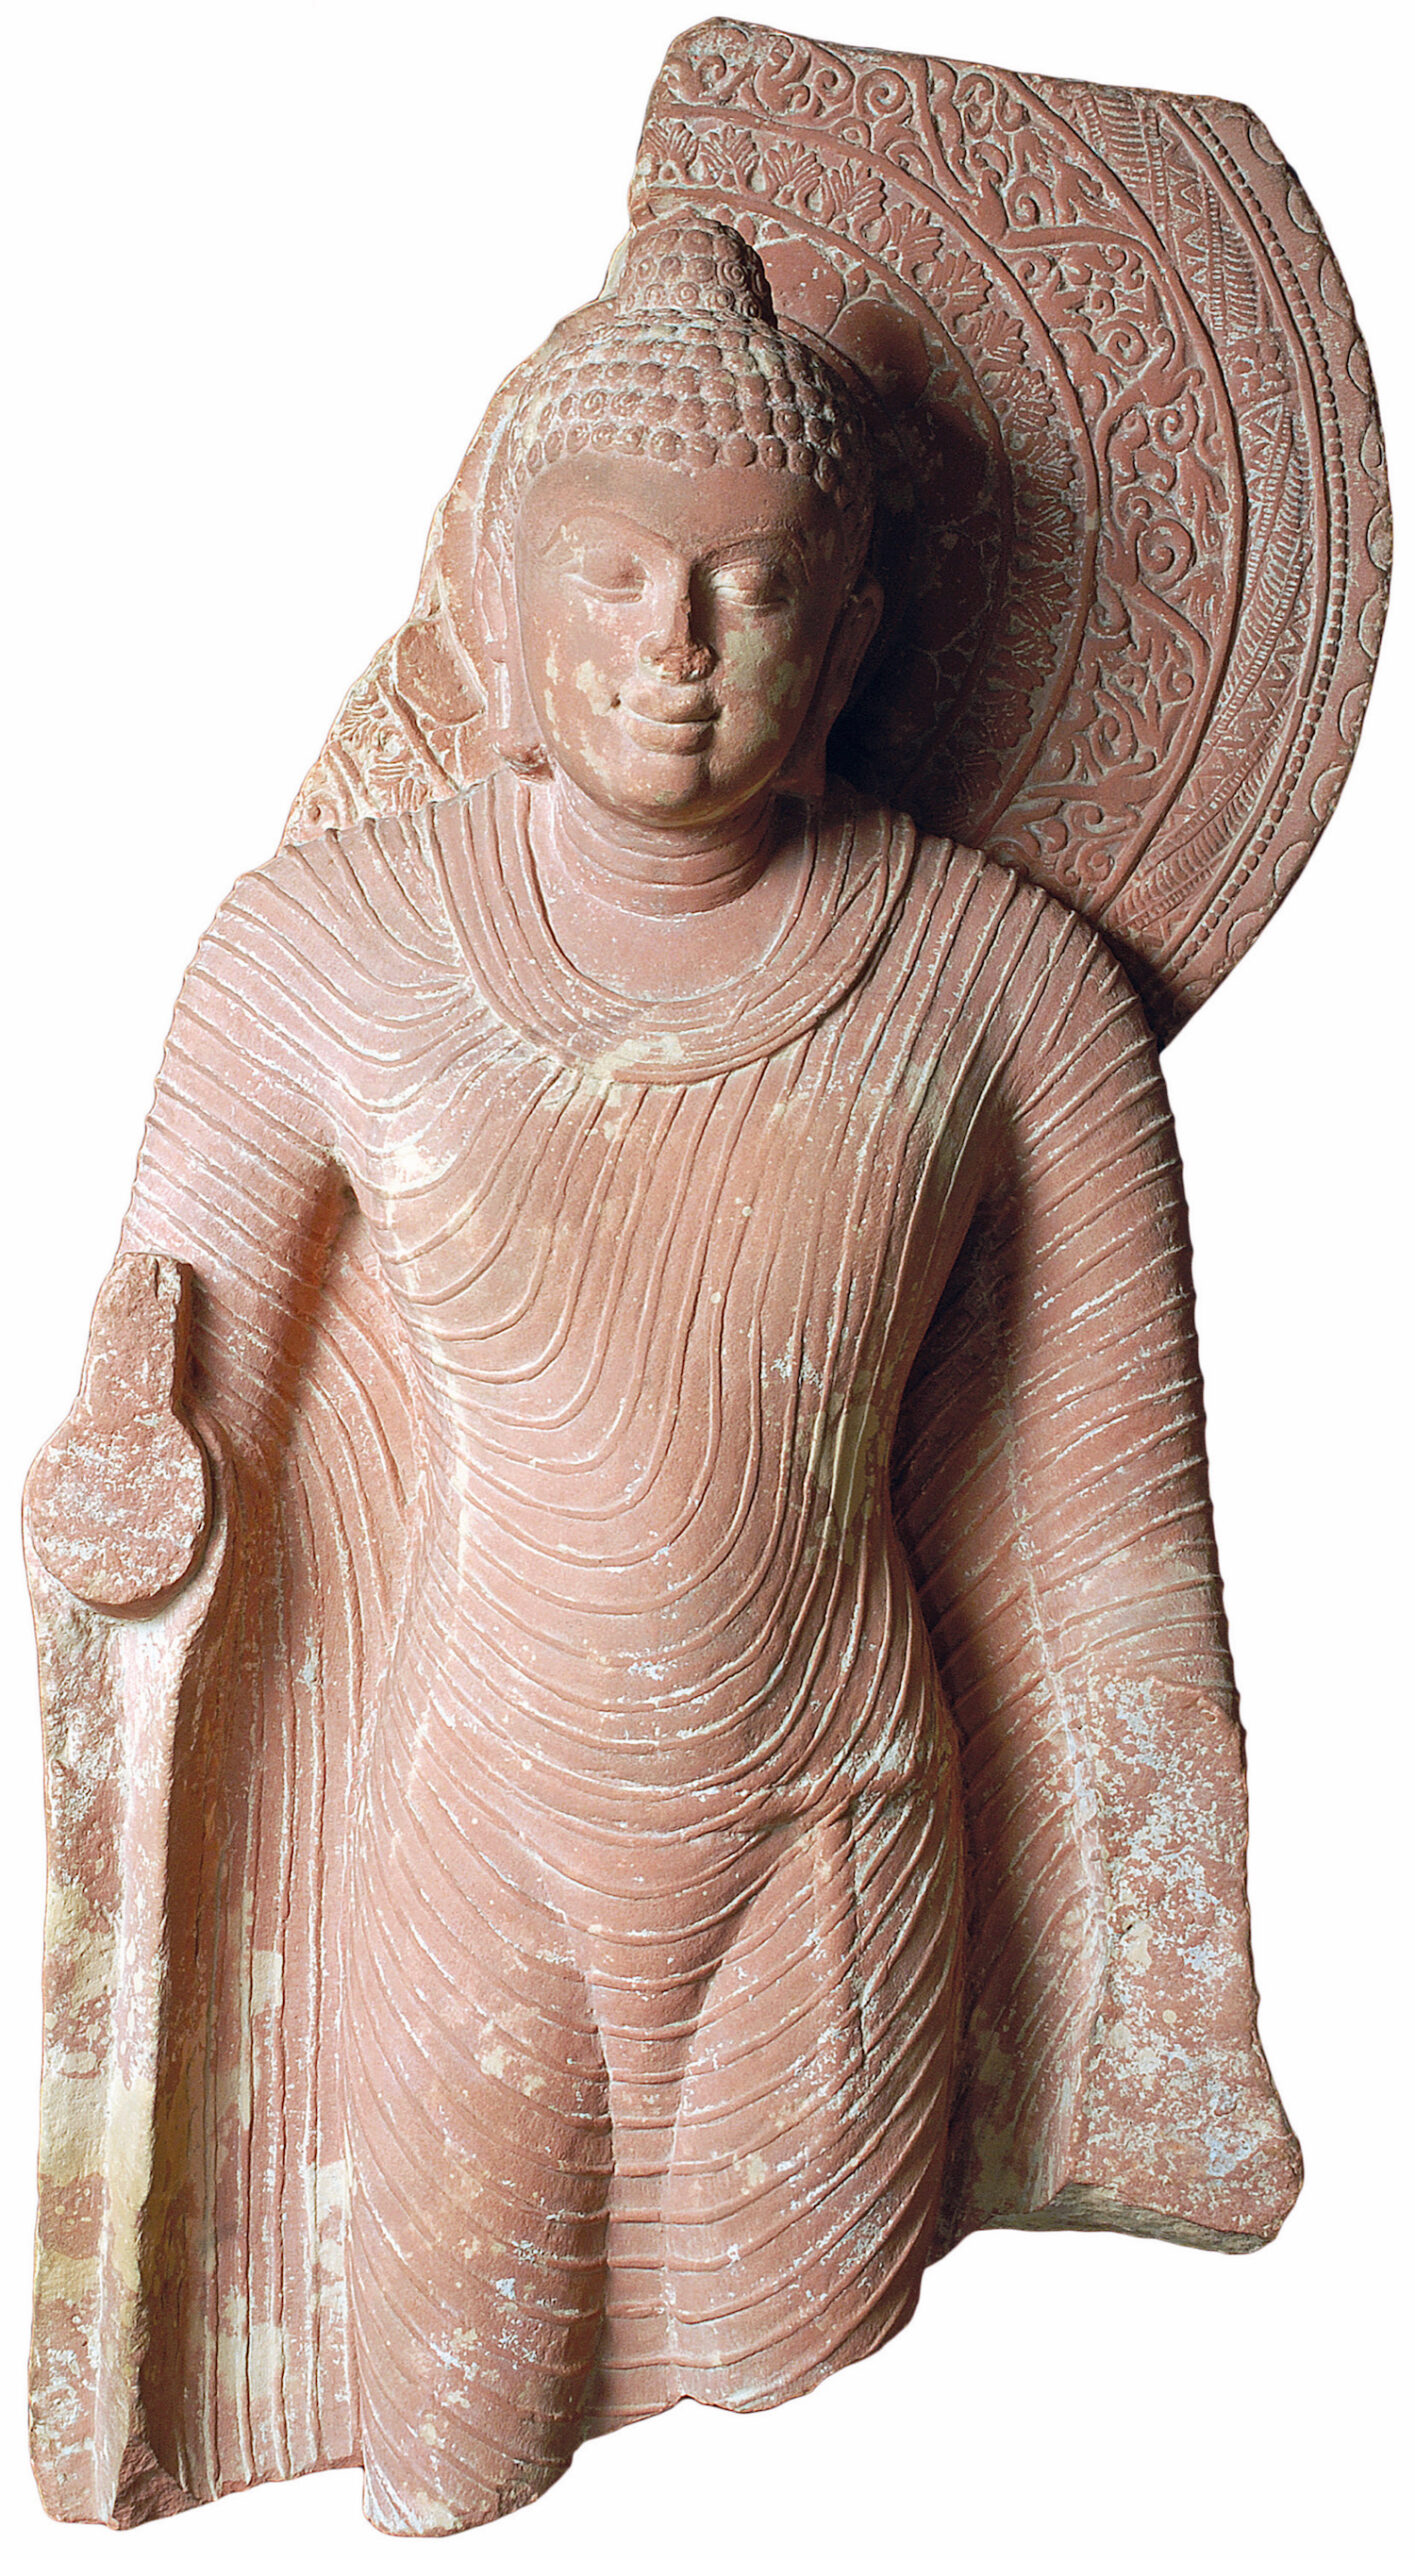 Bouddha debout, Mathura, Uttar Pradesh, Ve-VIe siècles. Grès rouge moucheté. © Museo d’arte orientale, Turin